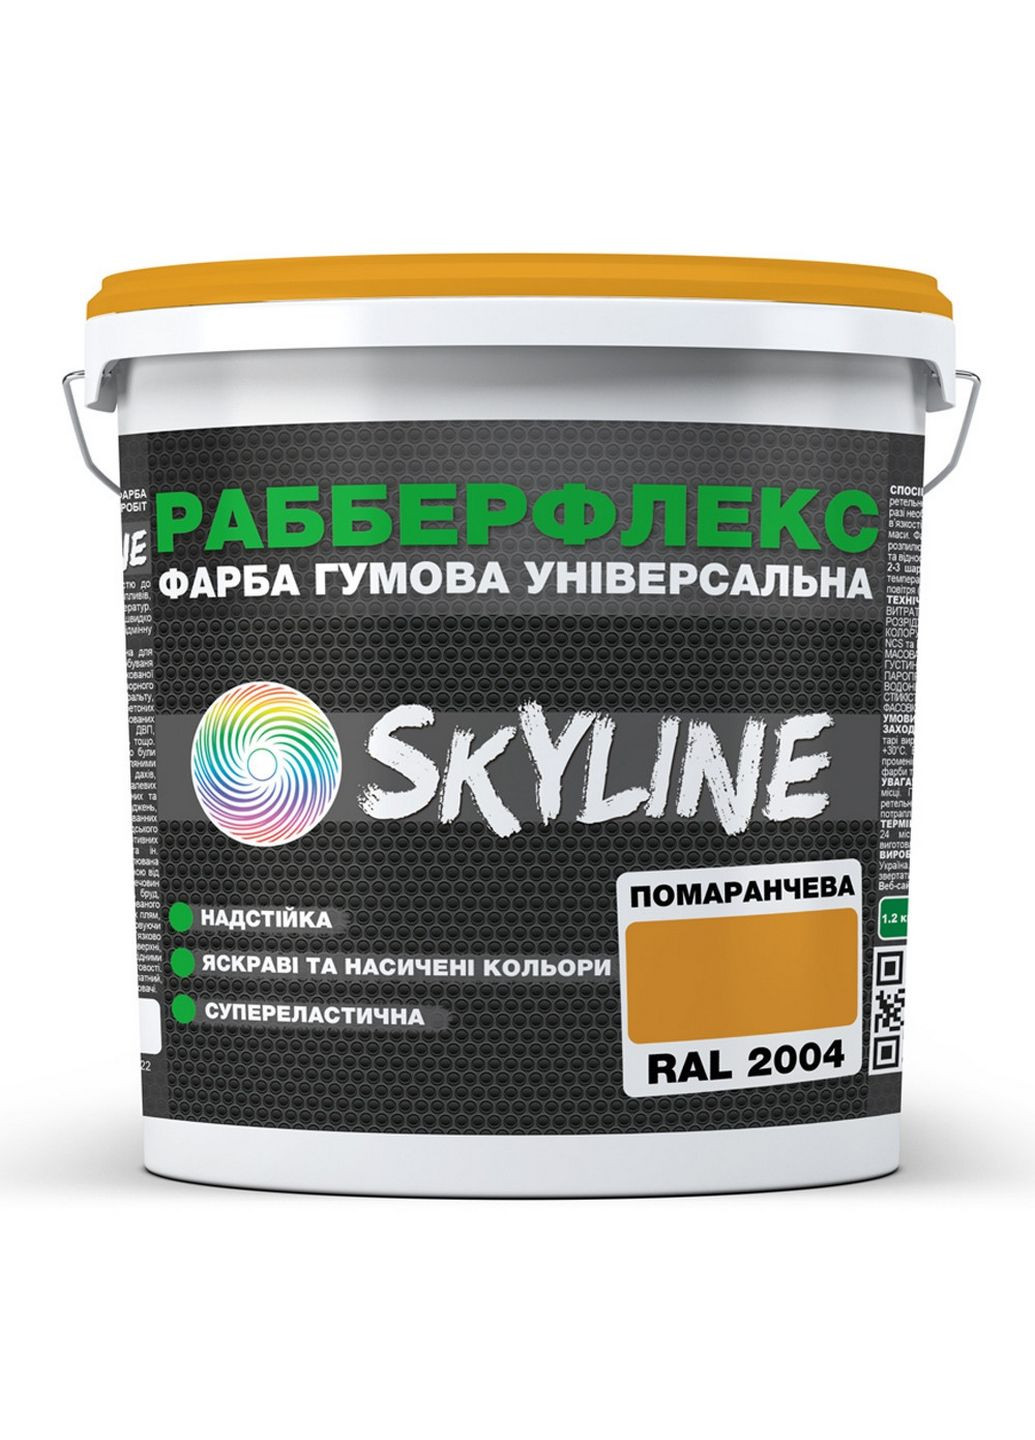 Сверхстойкая краска резиновая суперэластичная «РабберФлекс» 3,6 кг SkyLine (283326012)